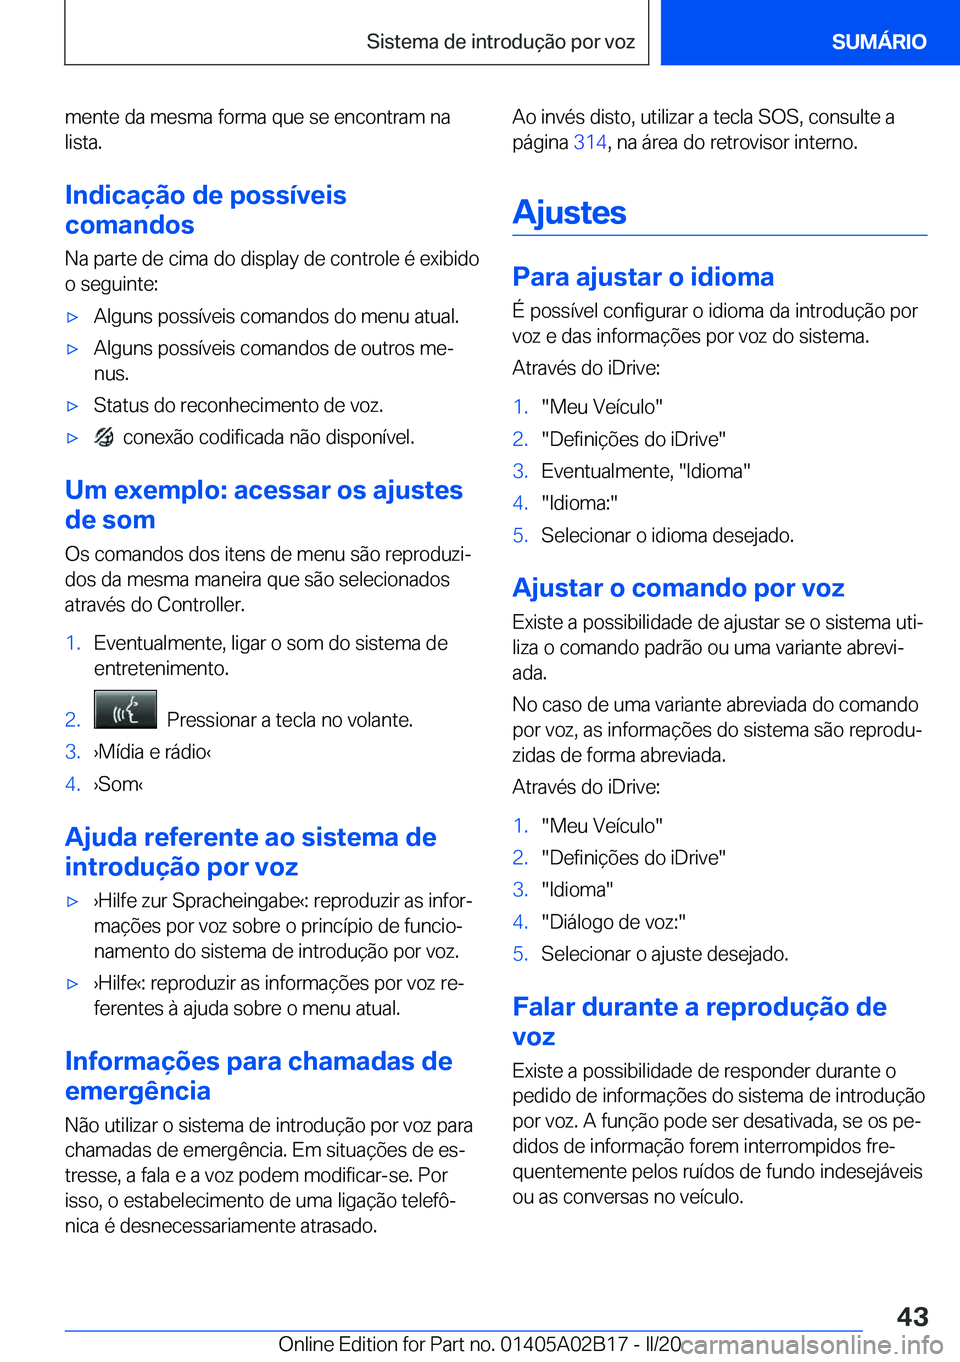 BMW X1 2020  Manual do condutor (in Portuguese) �m�e�n�t�e��d�a��m�e�s�m�a��f�o�r�m�a��q�u�e��s�e��e�n�c�o�n�t�r�a�m��n�a�l�i�s�t�a�.
�I�n�d�i�c�a�